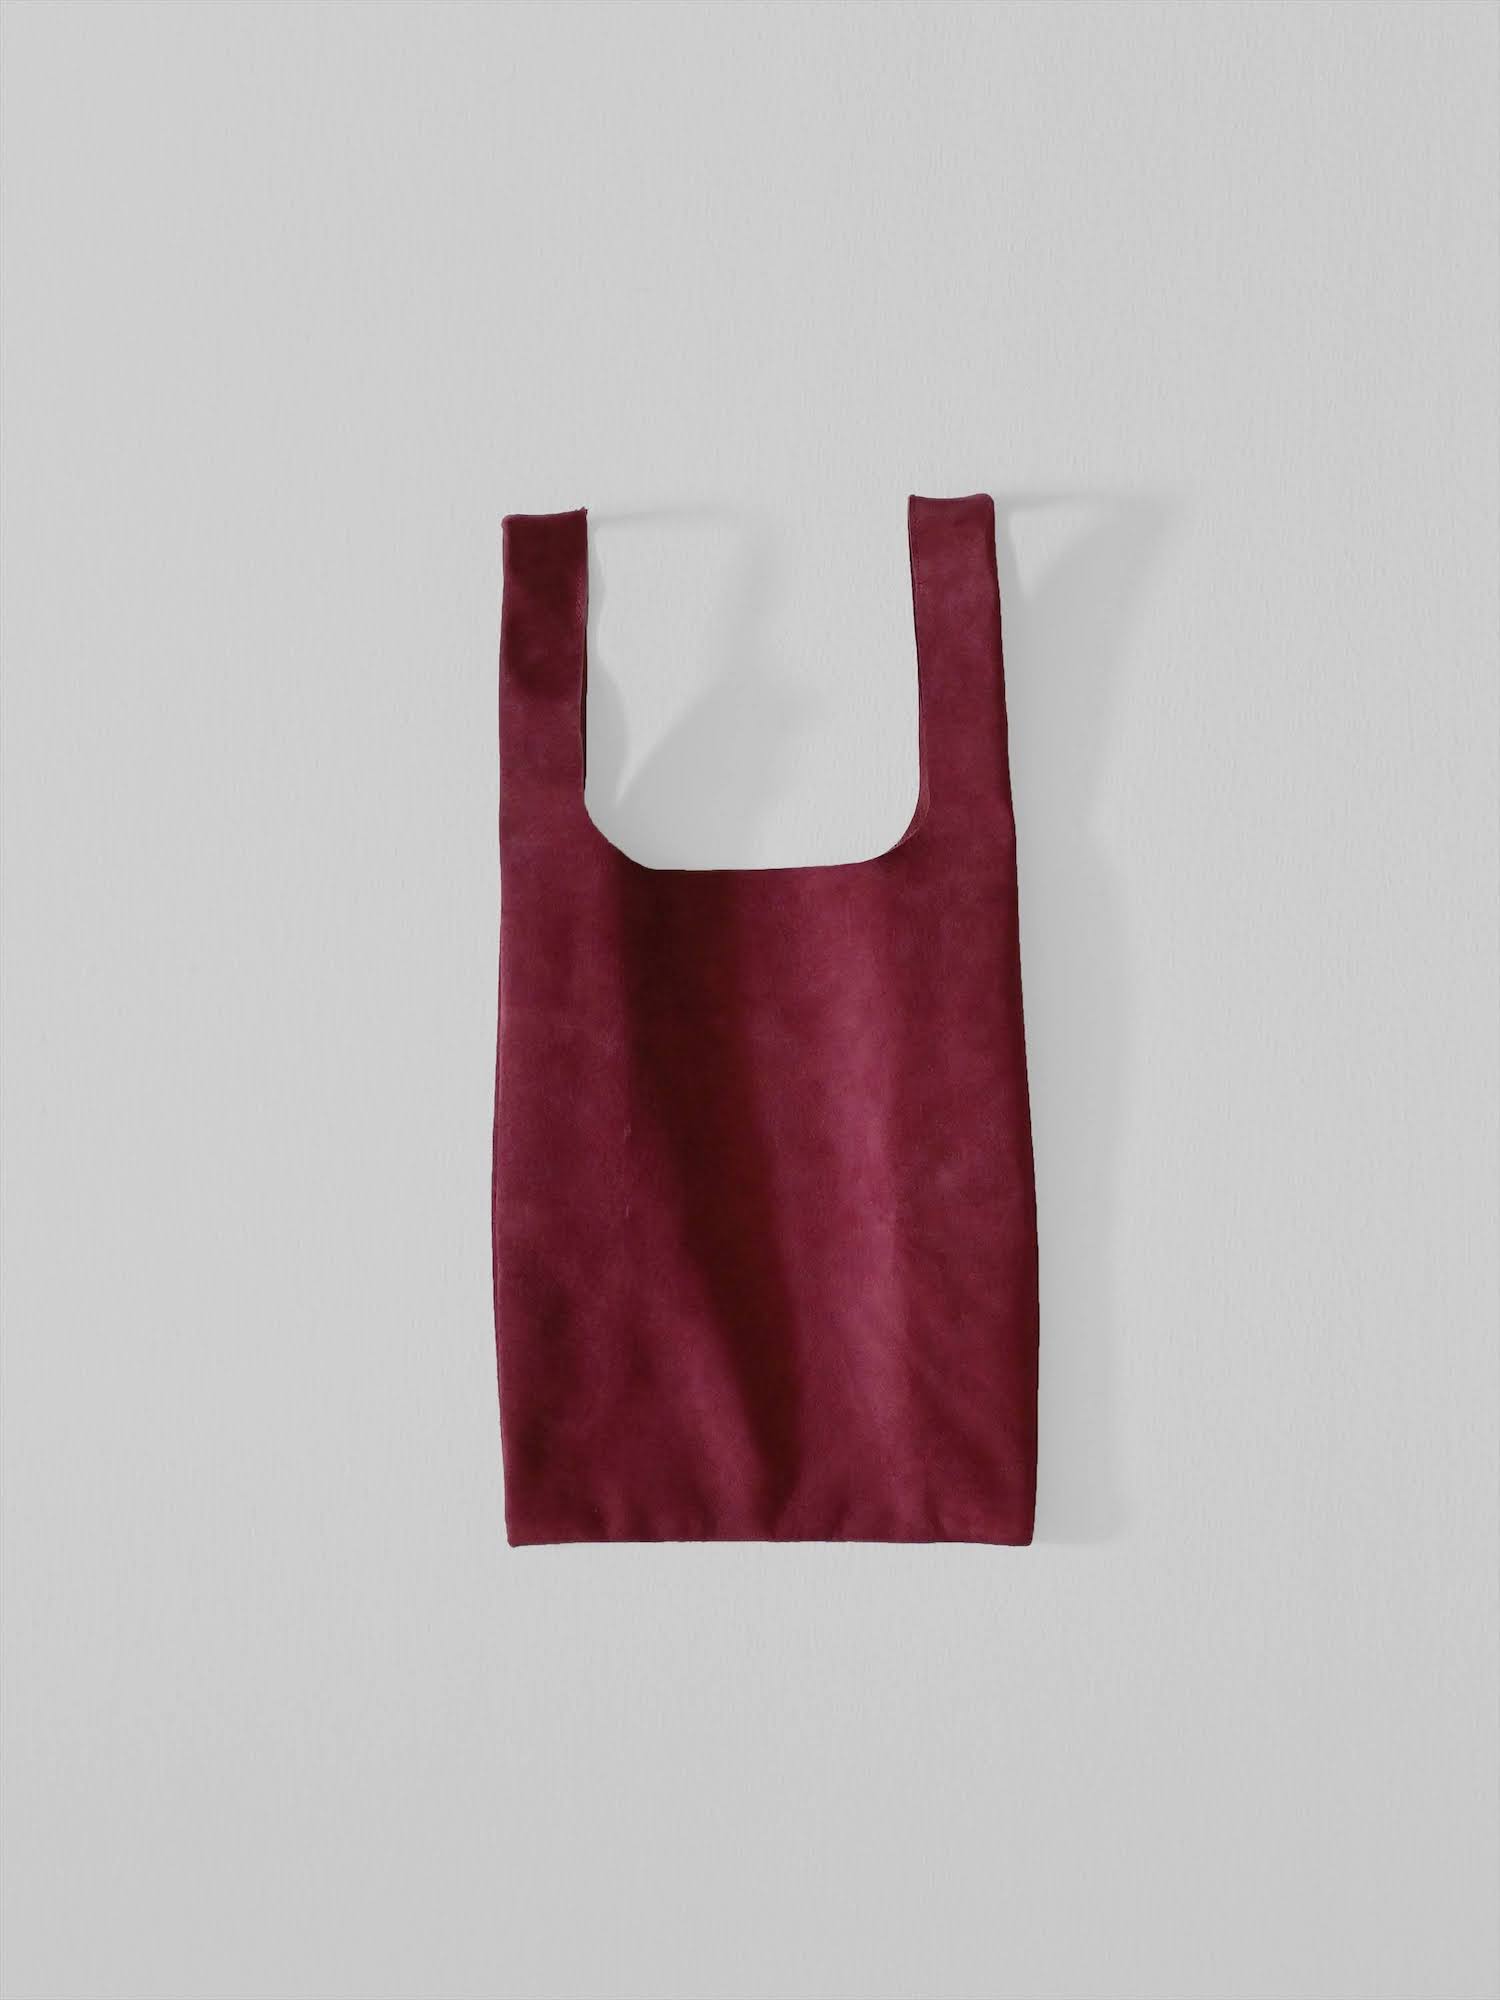 6727円 特価キャンペーン THE HINOKI organic cotton apron dress